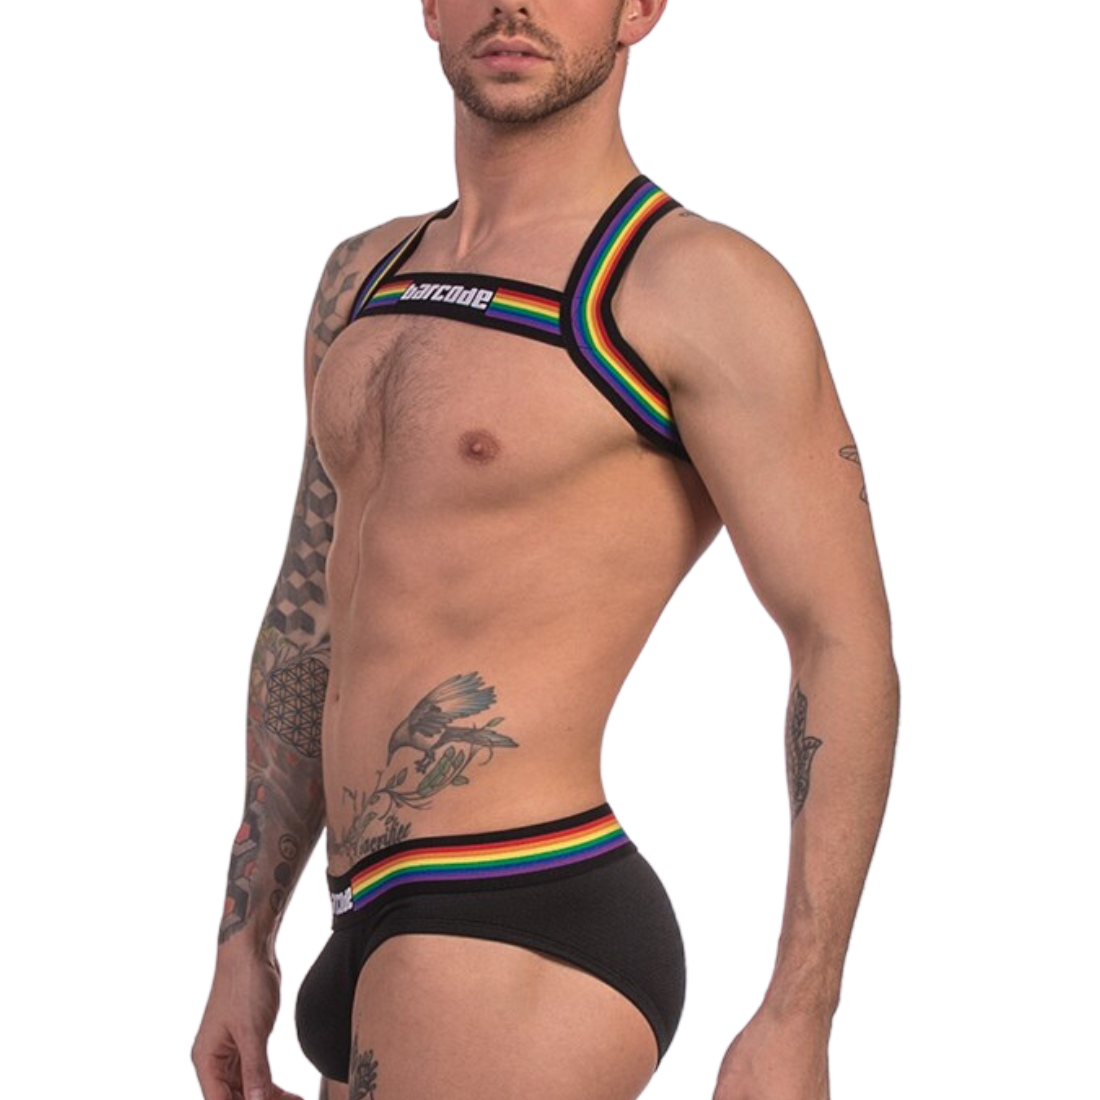 Zwart gay pride harnas met regenboog borduursel, ontworpen door het Duitse modemerk Barcode Berlin en te koop bij Flavourez.